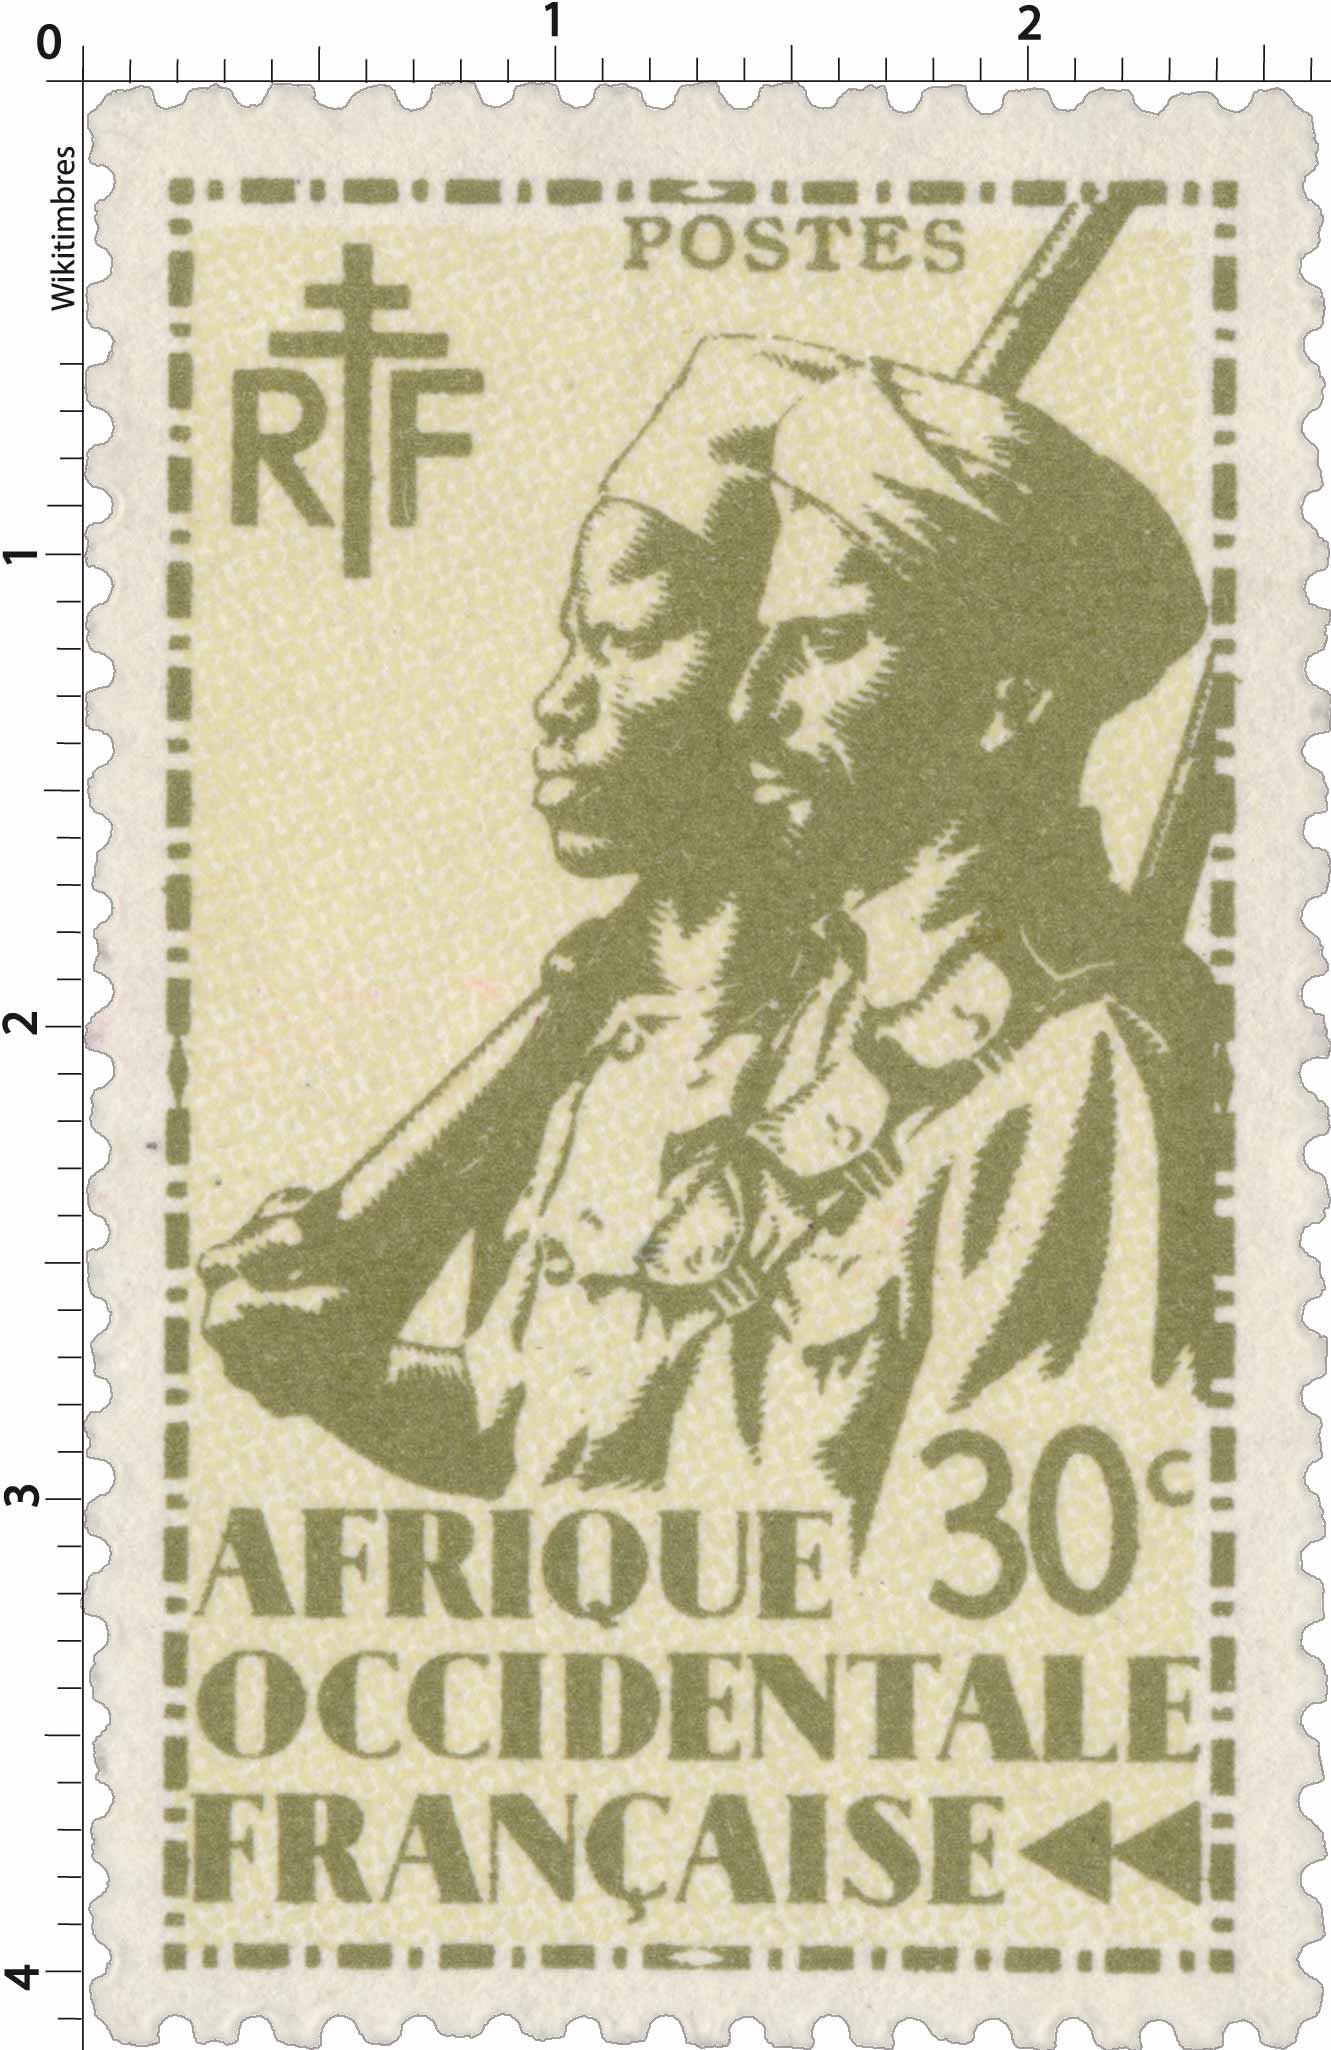 RUBAN BACHI MARINE A.O.F AFRIQUE OCCIDENTALE FRANCAISE 